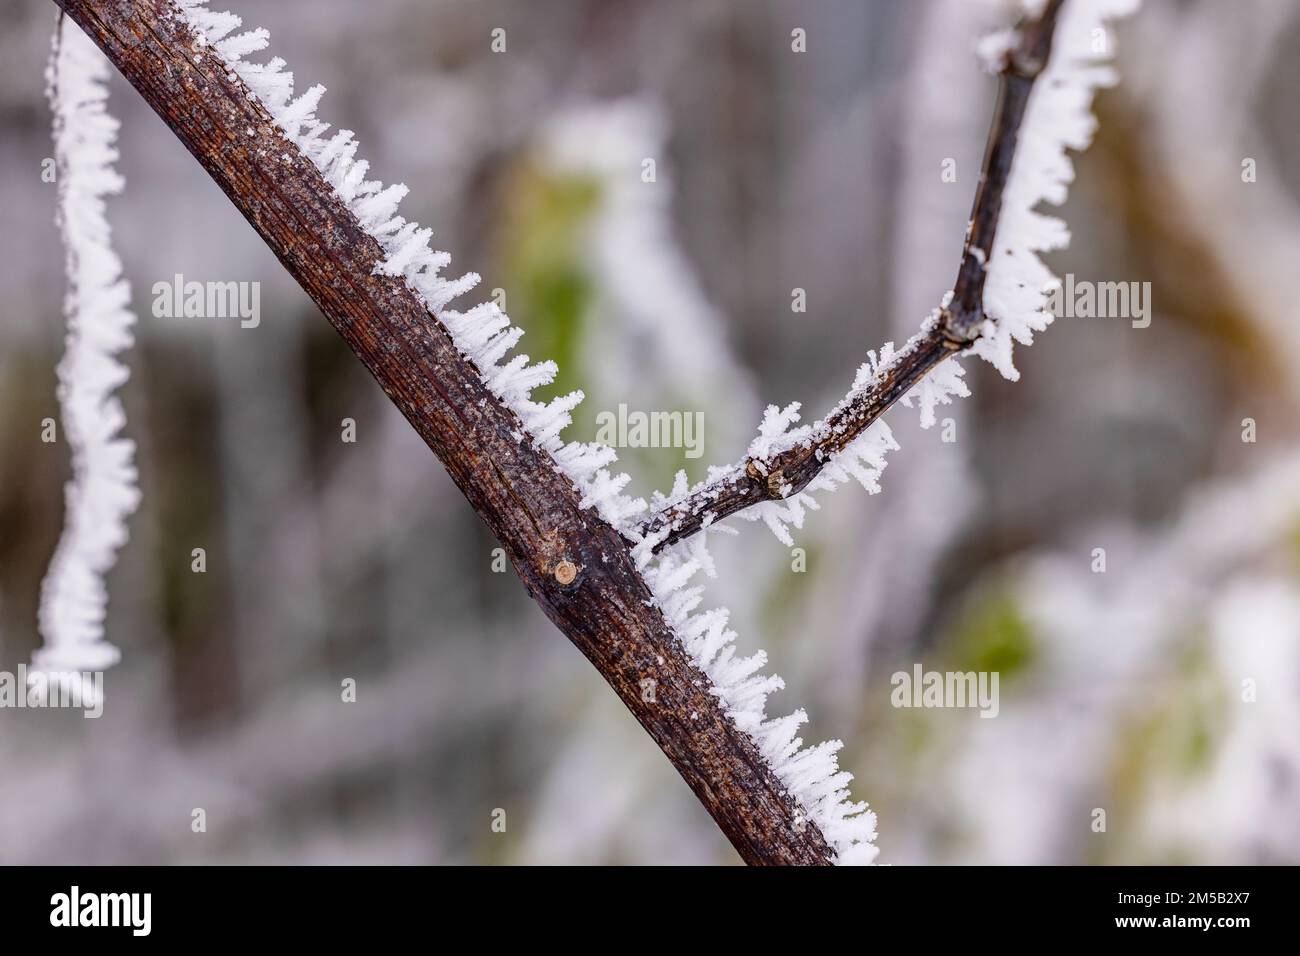 Lunghi e prominenti cristalli di gelo, ghiaccio e neve in inverno, esposti con messa a fuoco impilata Foto Stock